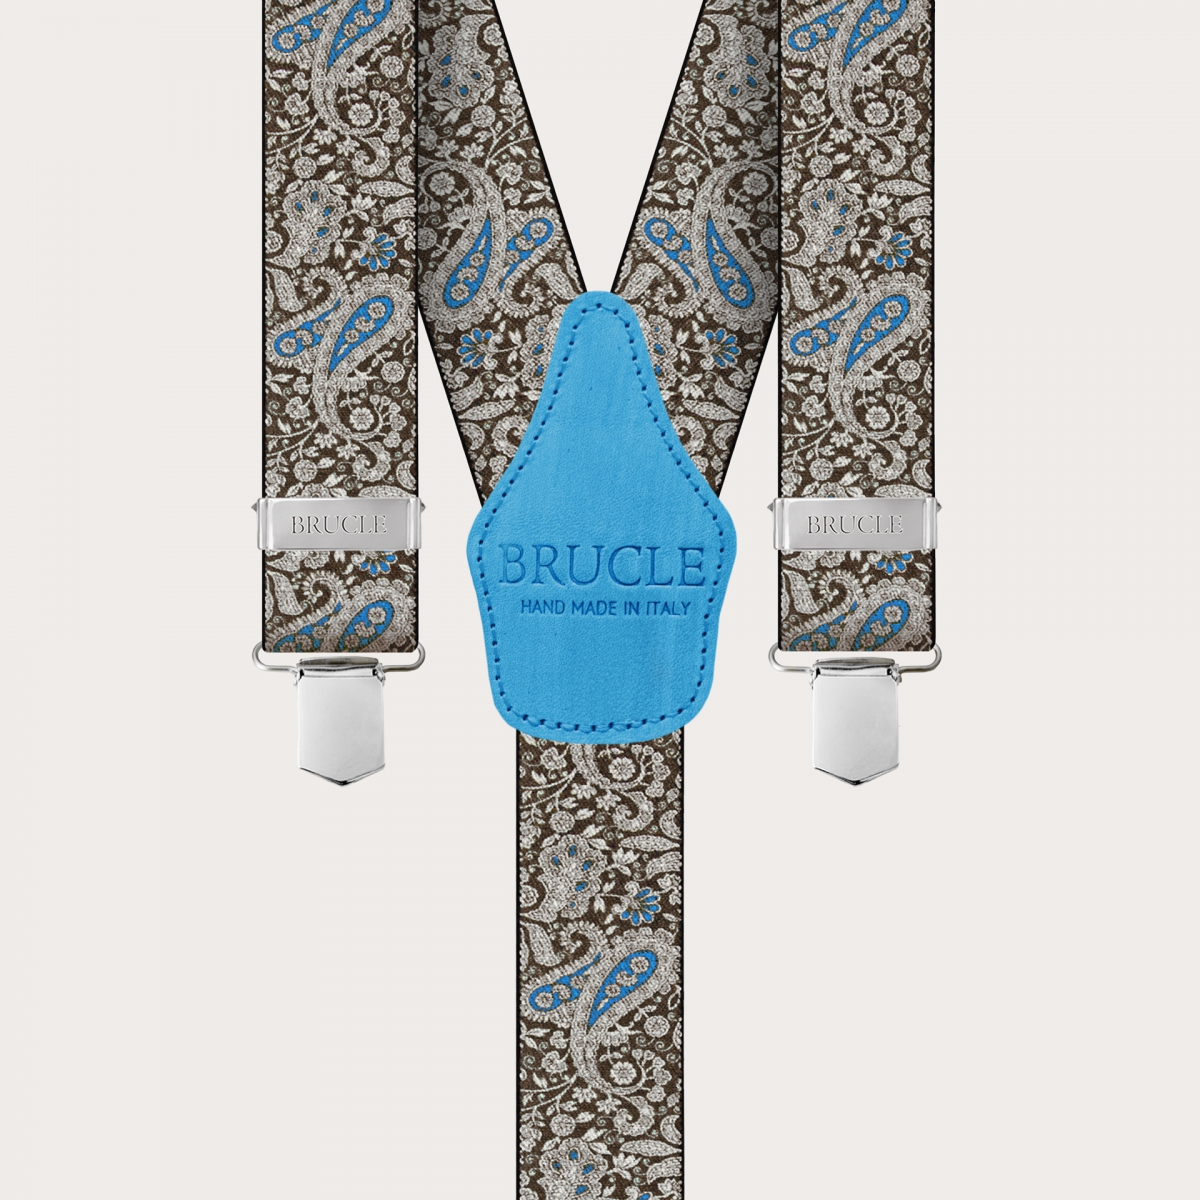 BRUCLE Hosenträger mit Clips in braunem und blauem Kaschmirmuster